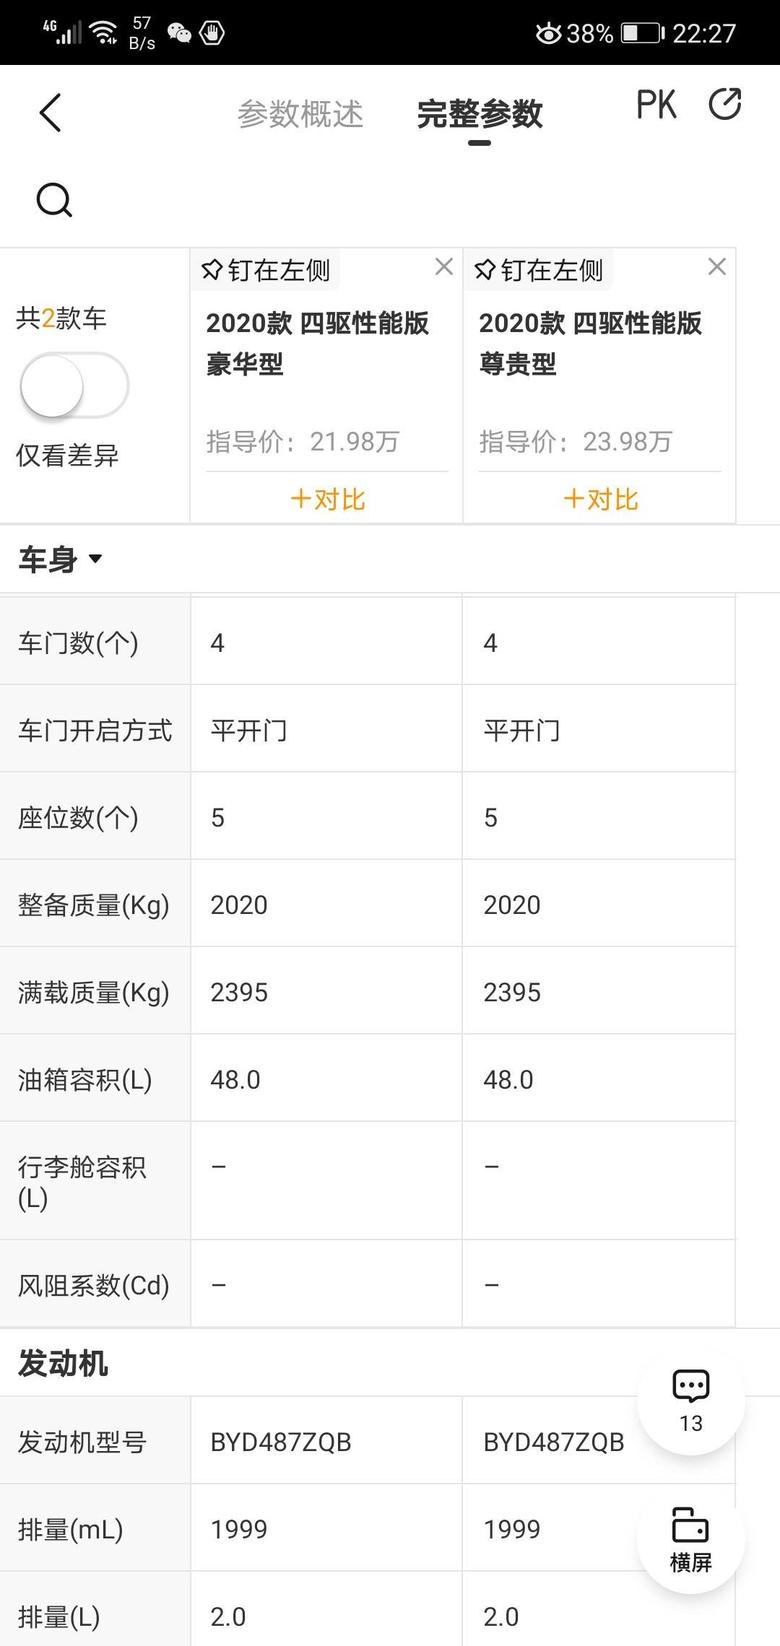 比亚迪汉dm满载质量2395，整备2020，意思是不是只能装375kg的人和物？